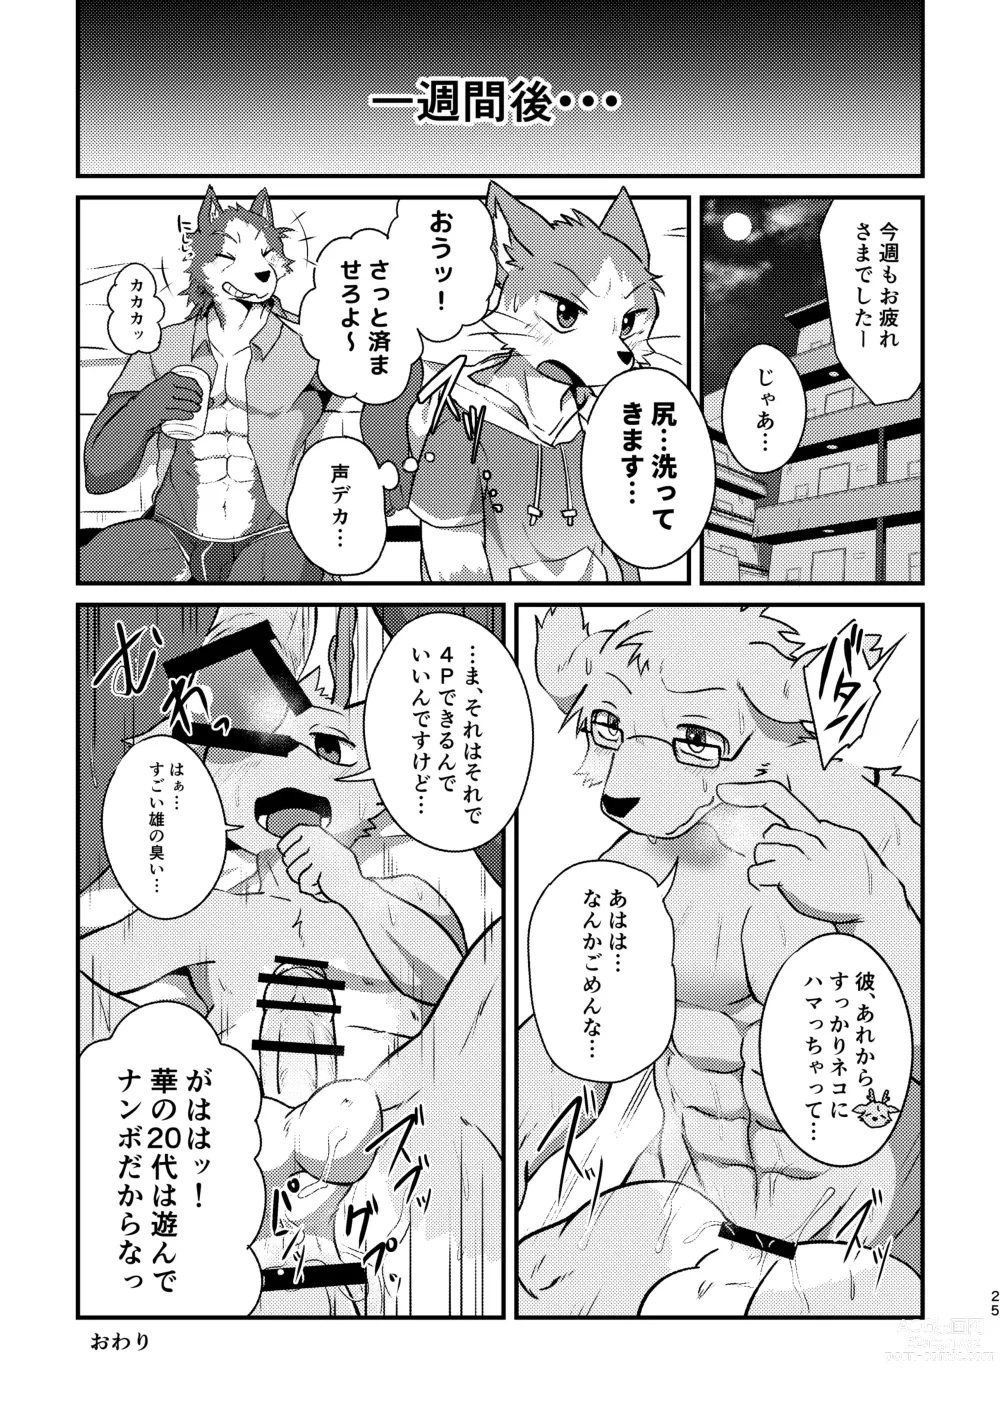 Page 49 of doujinshi Boku-Tachi Futari wa Neko shitai!